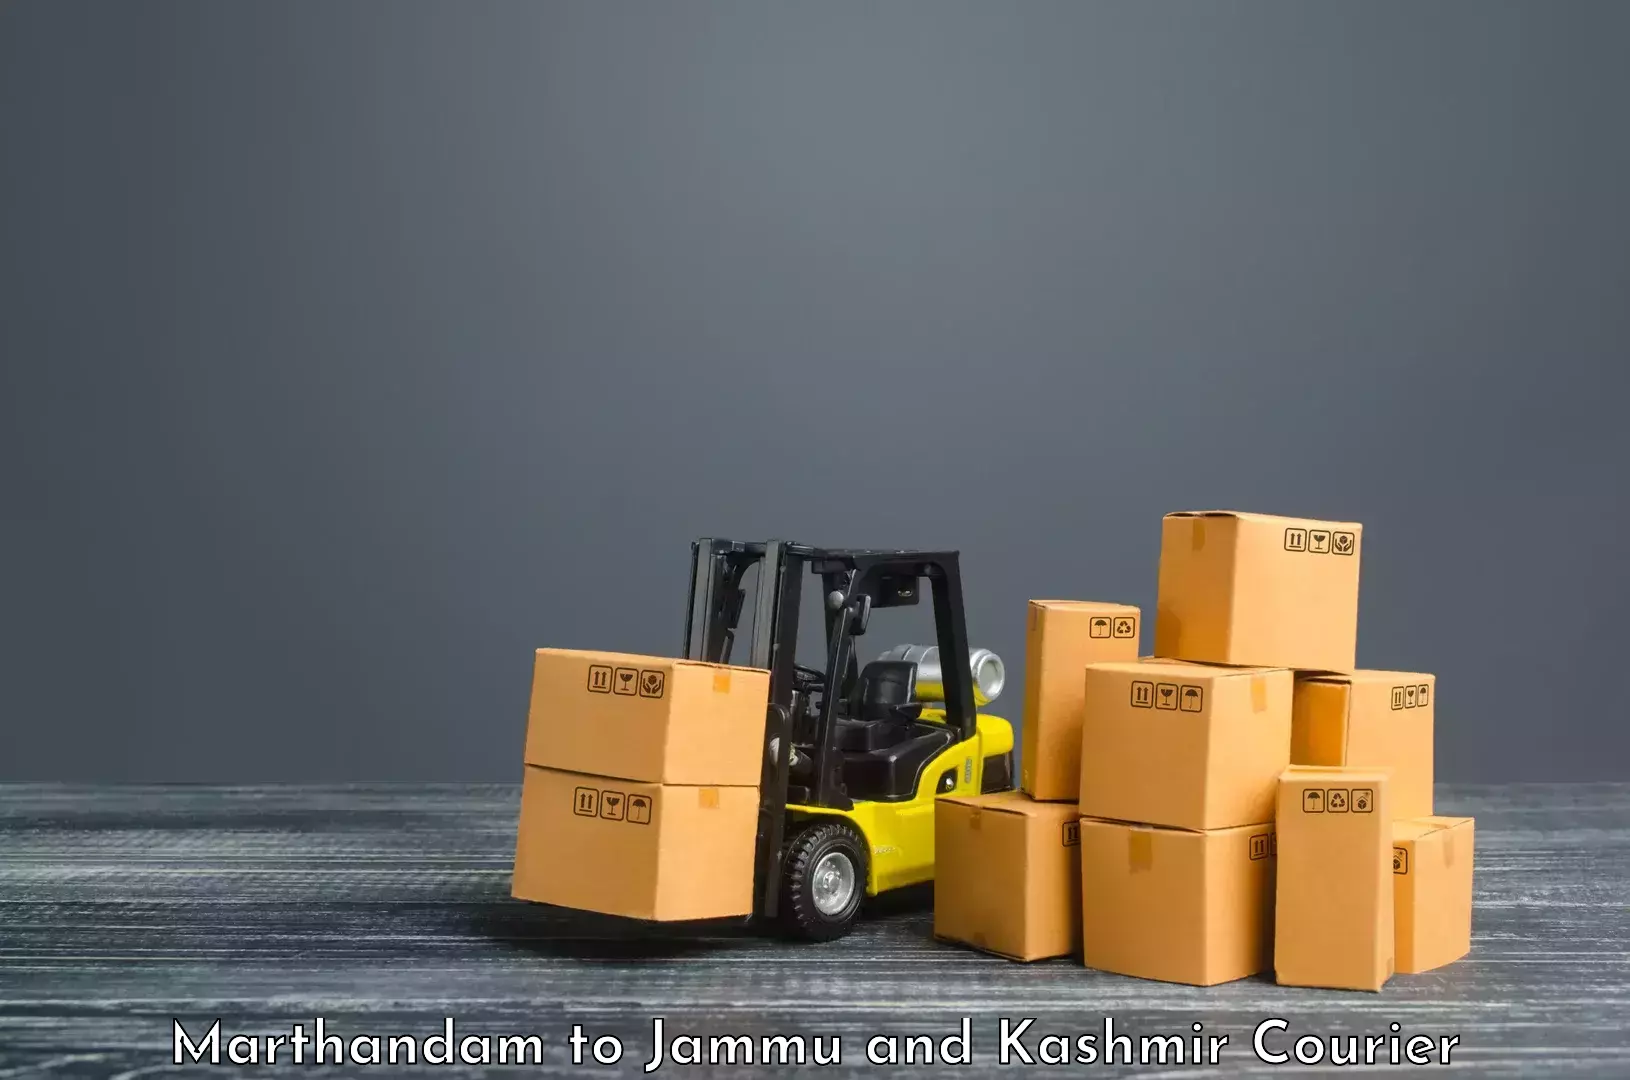 Customizable delivery plans Marthandam to IIT Jammu